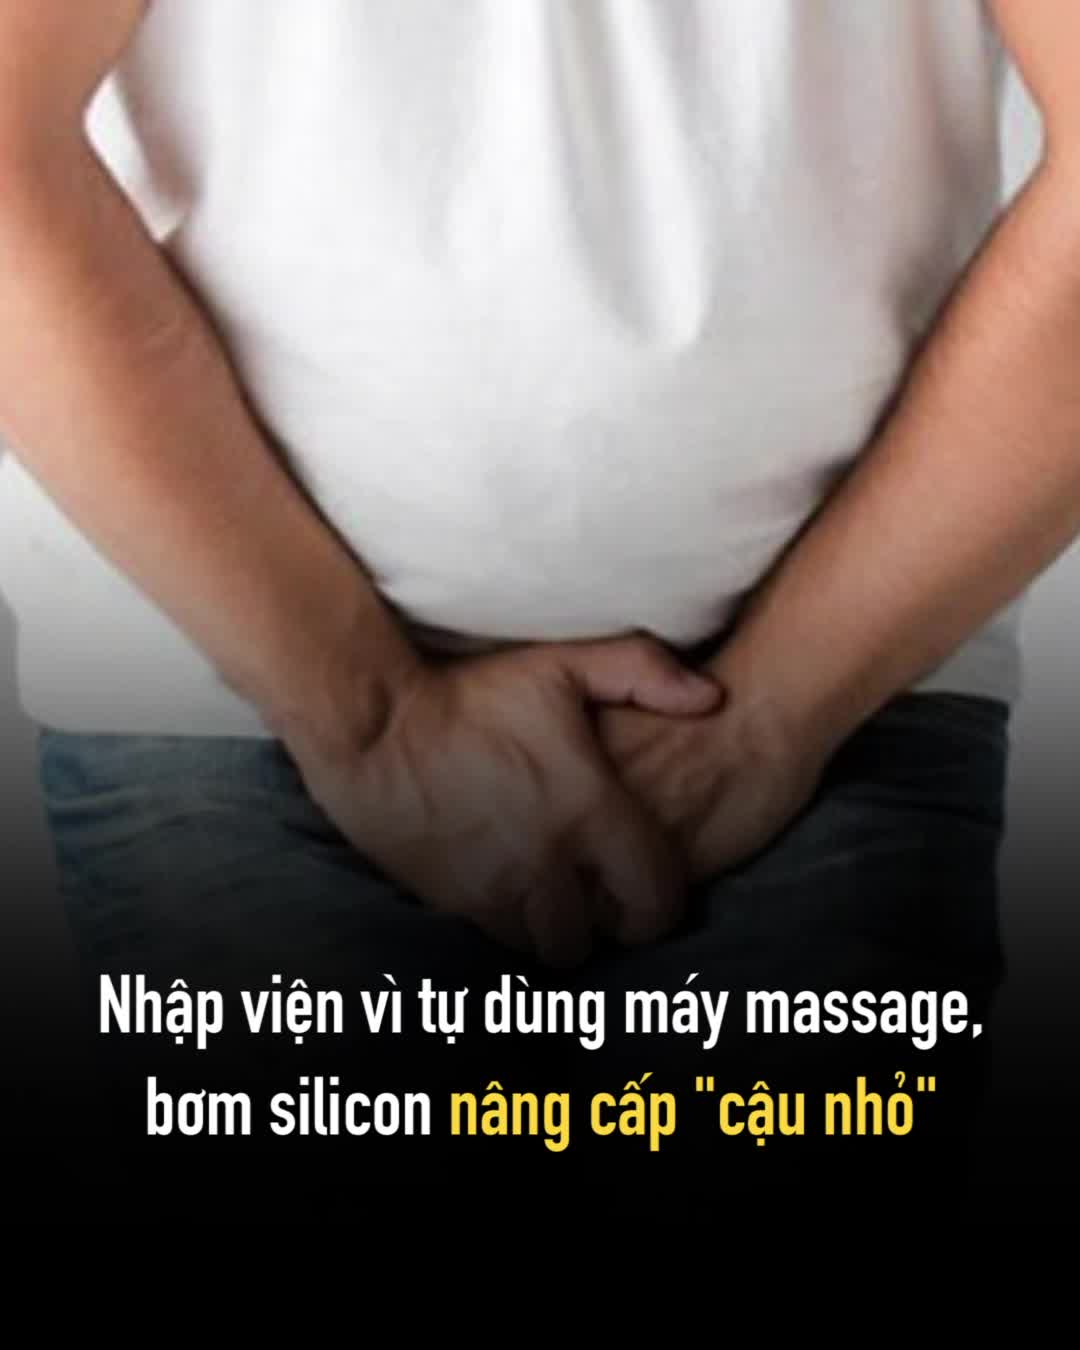 Nhập viện vì tự dùng máy massage, bơm silicon nâng cấp "cậu nhỏ"